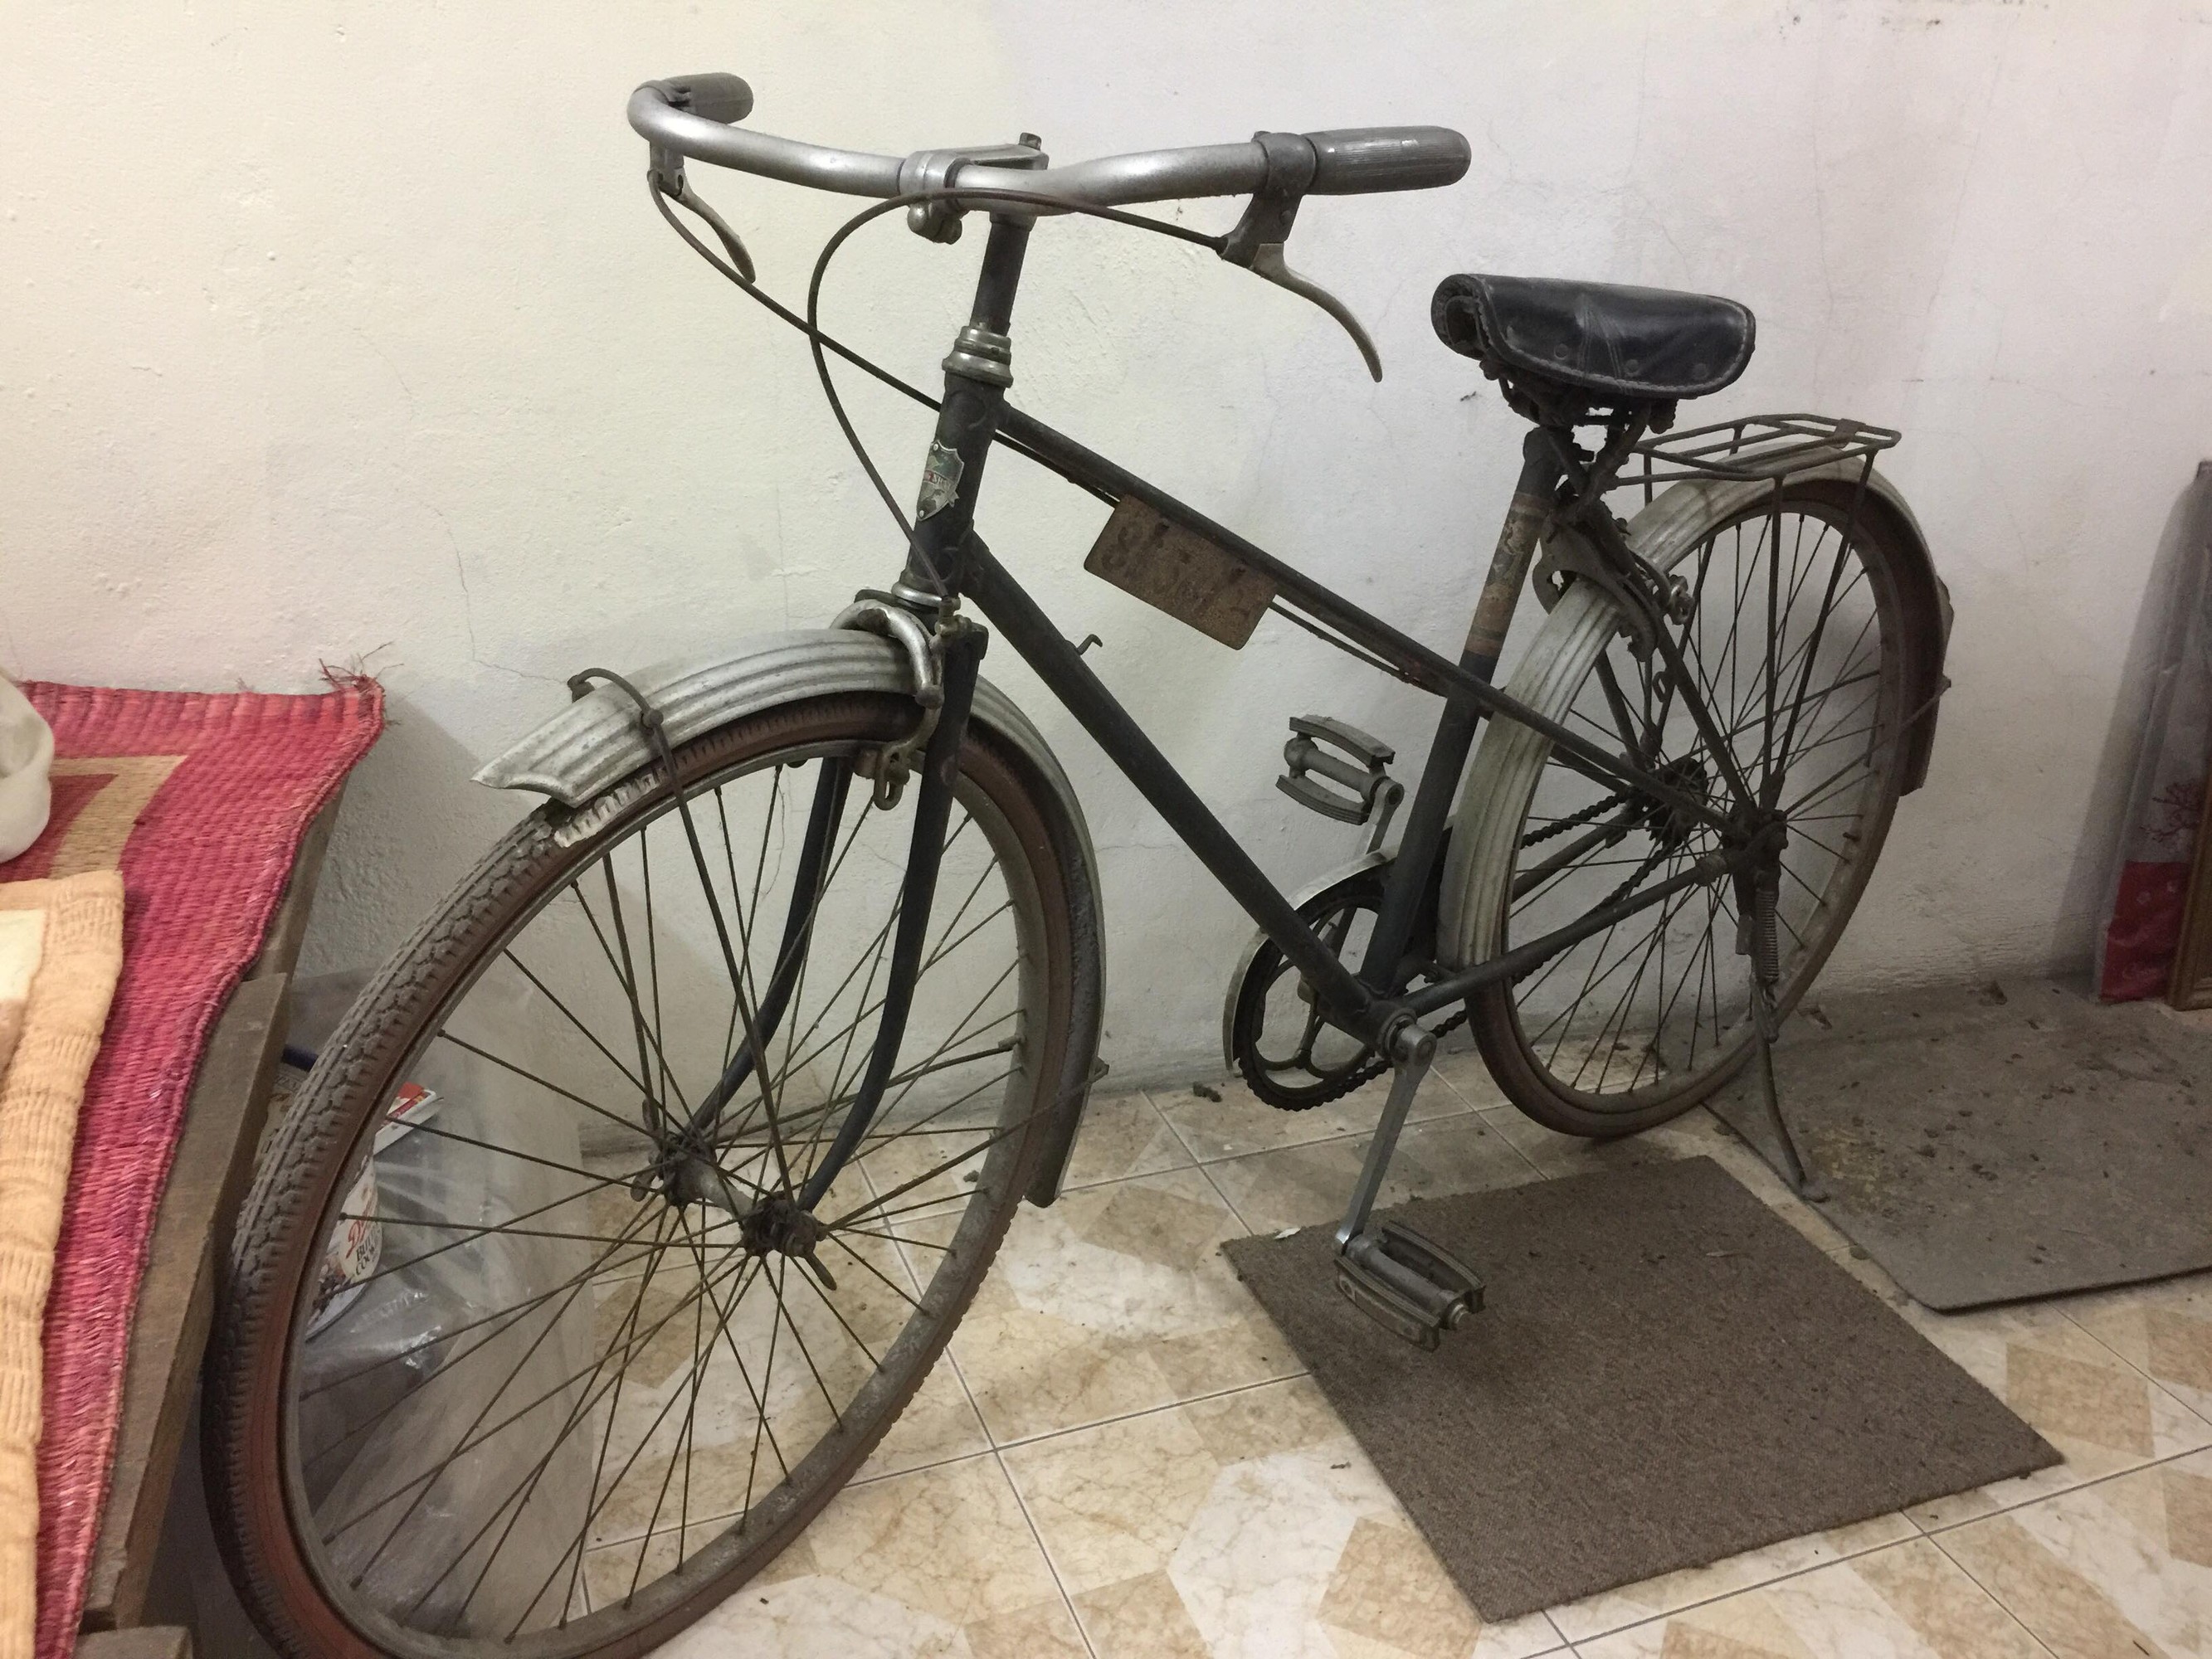 Những chiếc xe đạp cũ ngày xưa mang đến cho chúng ta những kỷ niệm đẹp về tuổi thơ. Hãy khám phá lại những ký ức ấy và cảm nhận sự đời thường, mộc mạc qua ảnh liên quan đến xe đạp cũ ngày xưa.